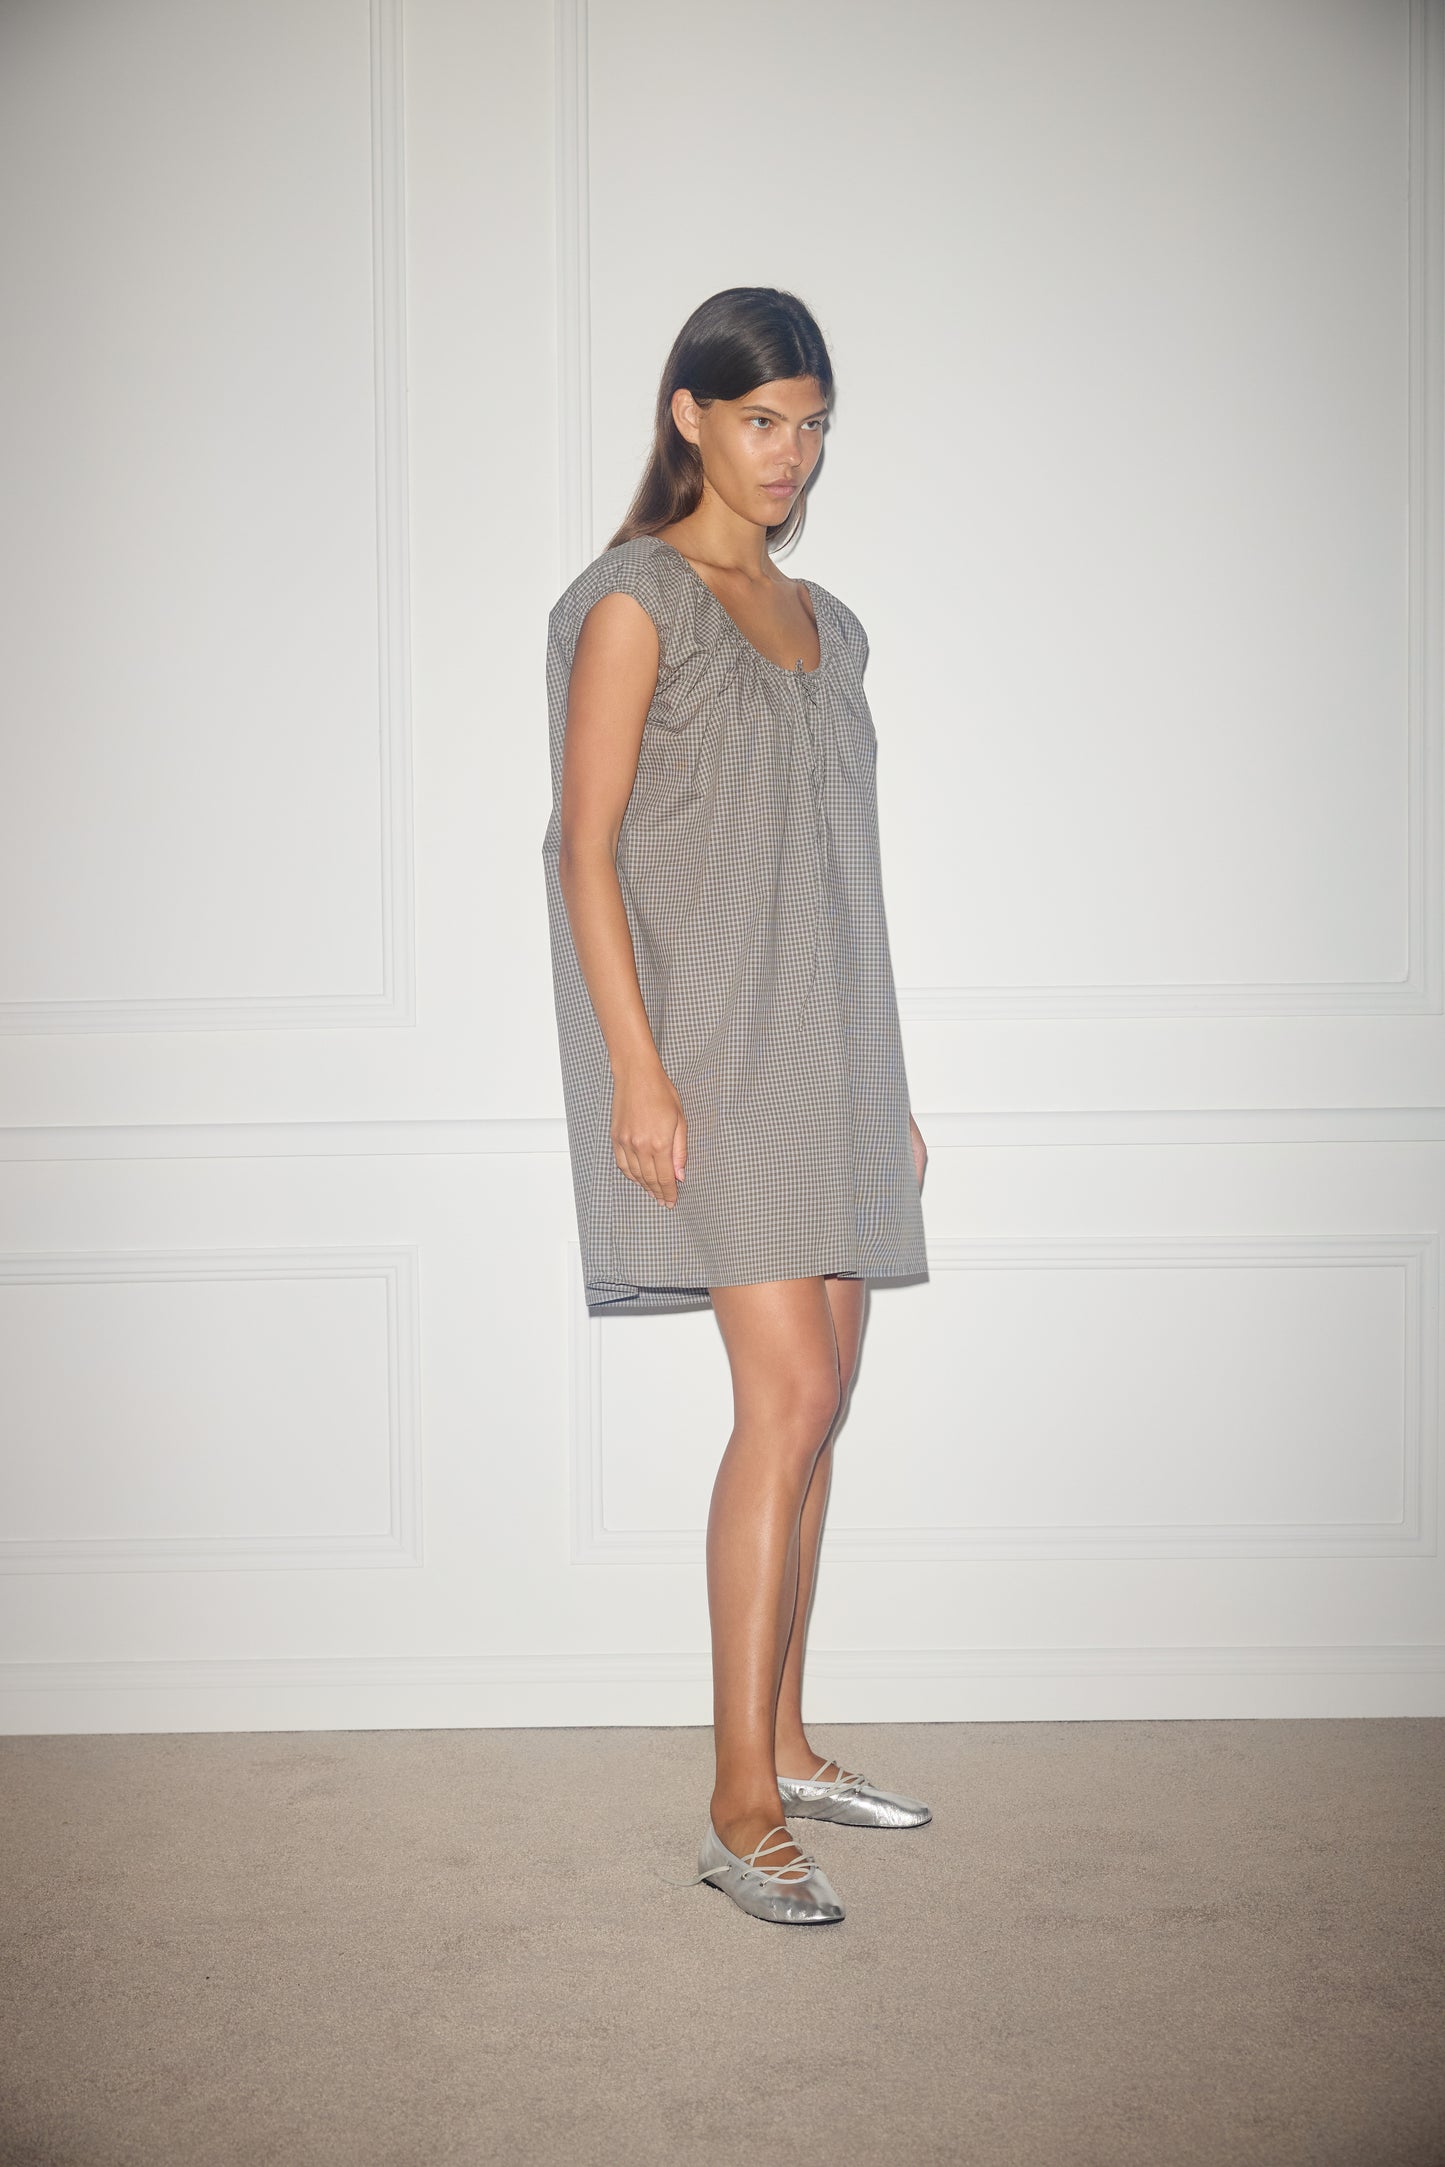 Female model wearing Capped Sleeve Dress - Khaki Check by Deiji Studios against plain background